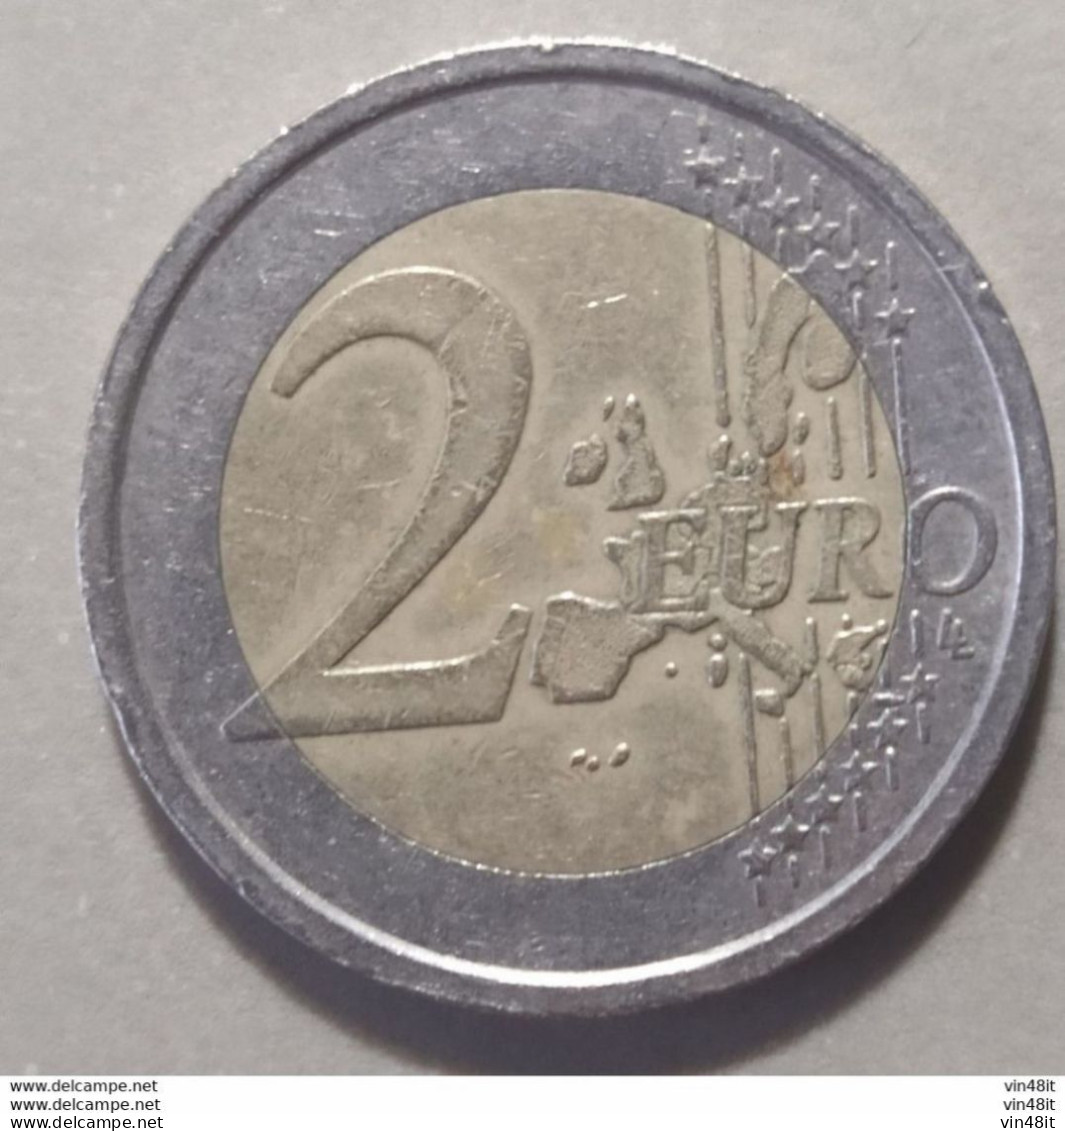 2014 -  SLOVENIA - MONETA IN EURO -  (COMMEMORATIVA)  DEL VALORE DI 2,00  EURO -  USATA- - Slovenië